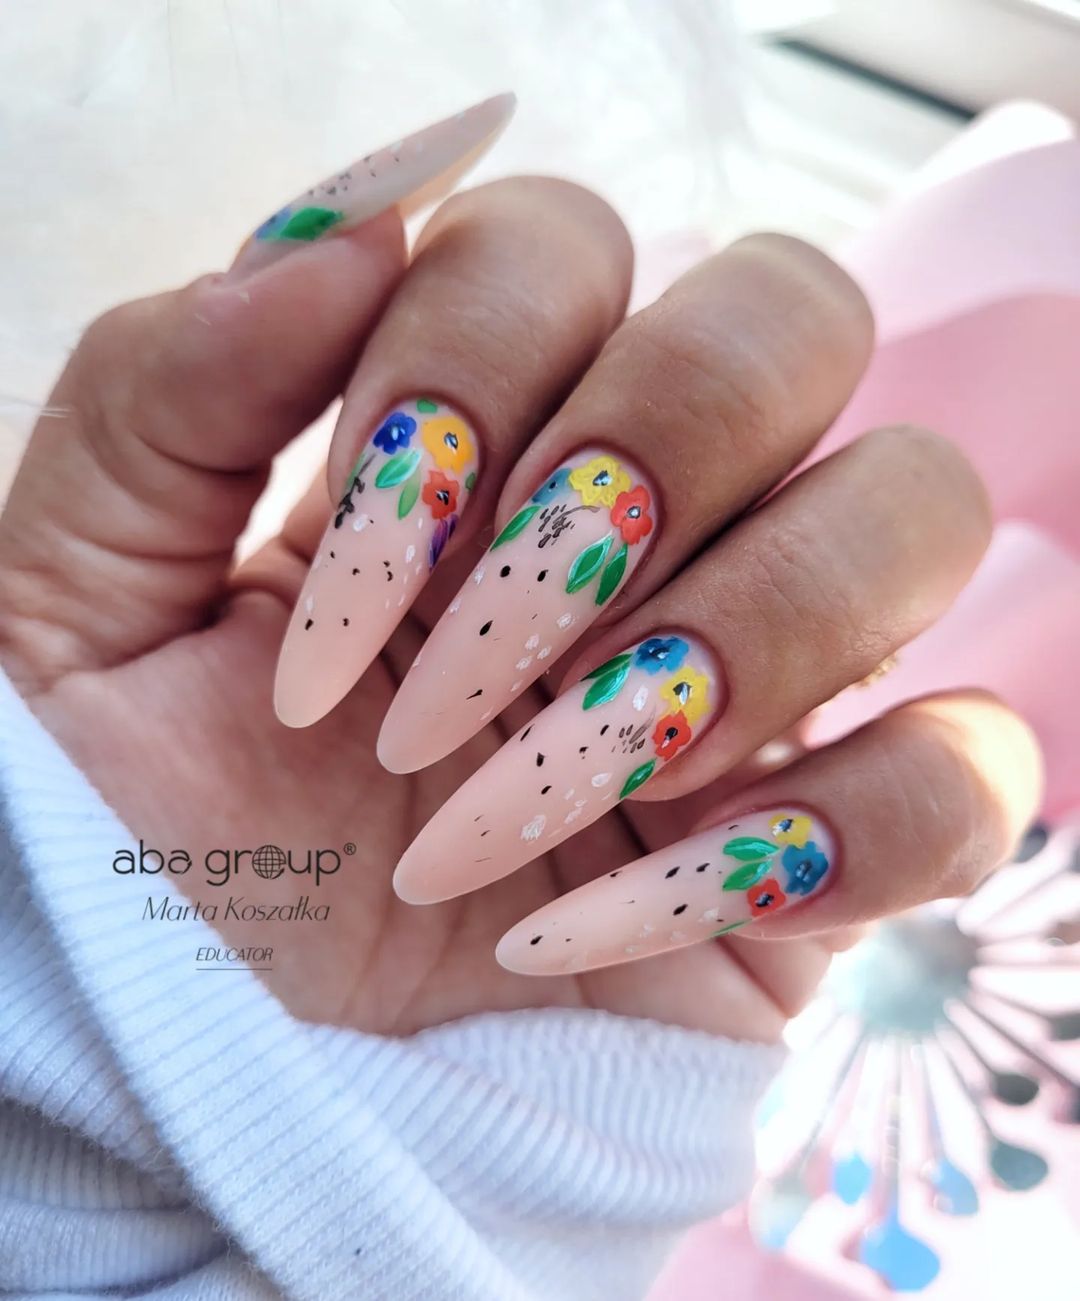 0Long Nude Amandel nagels met florale ontwerp